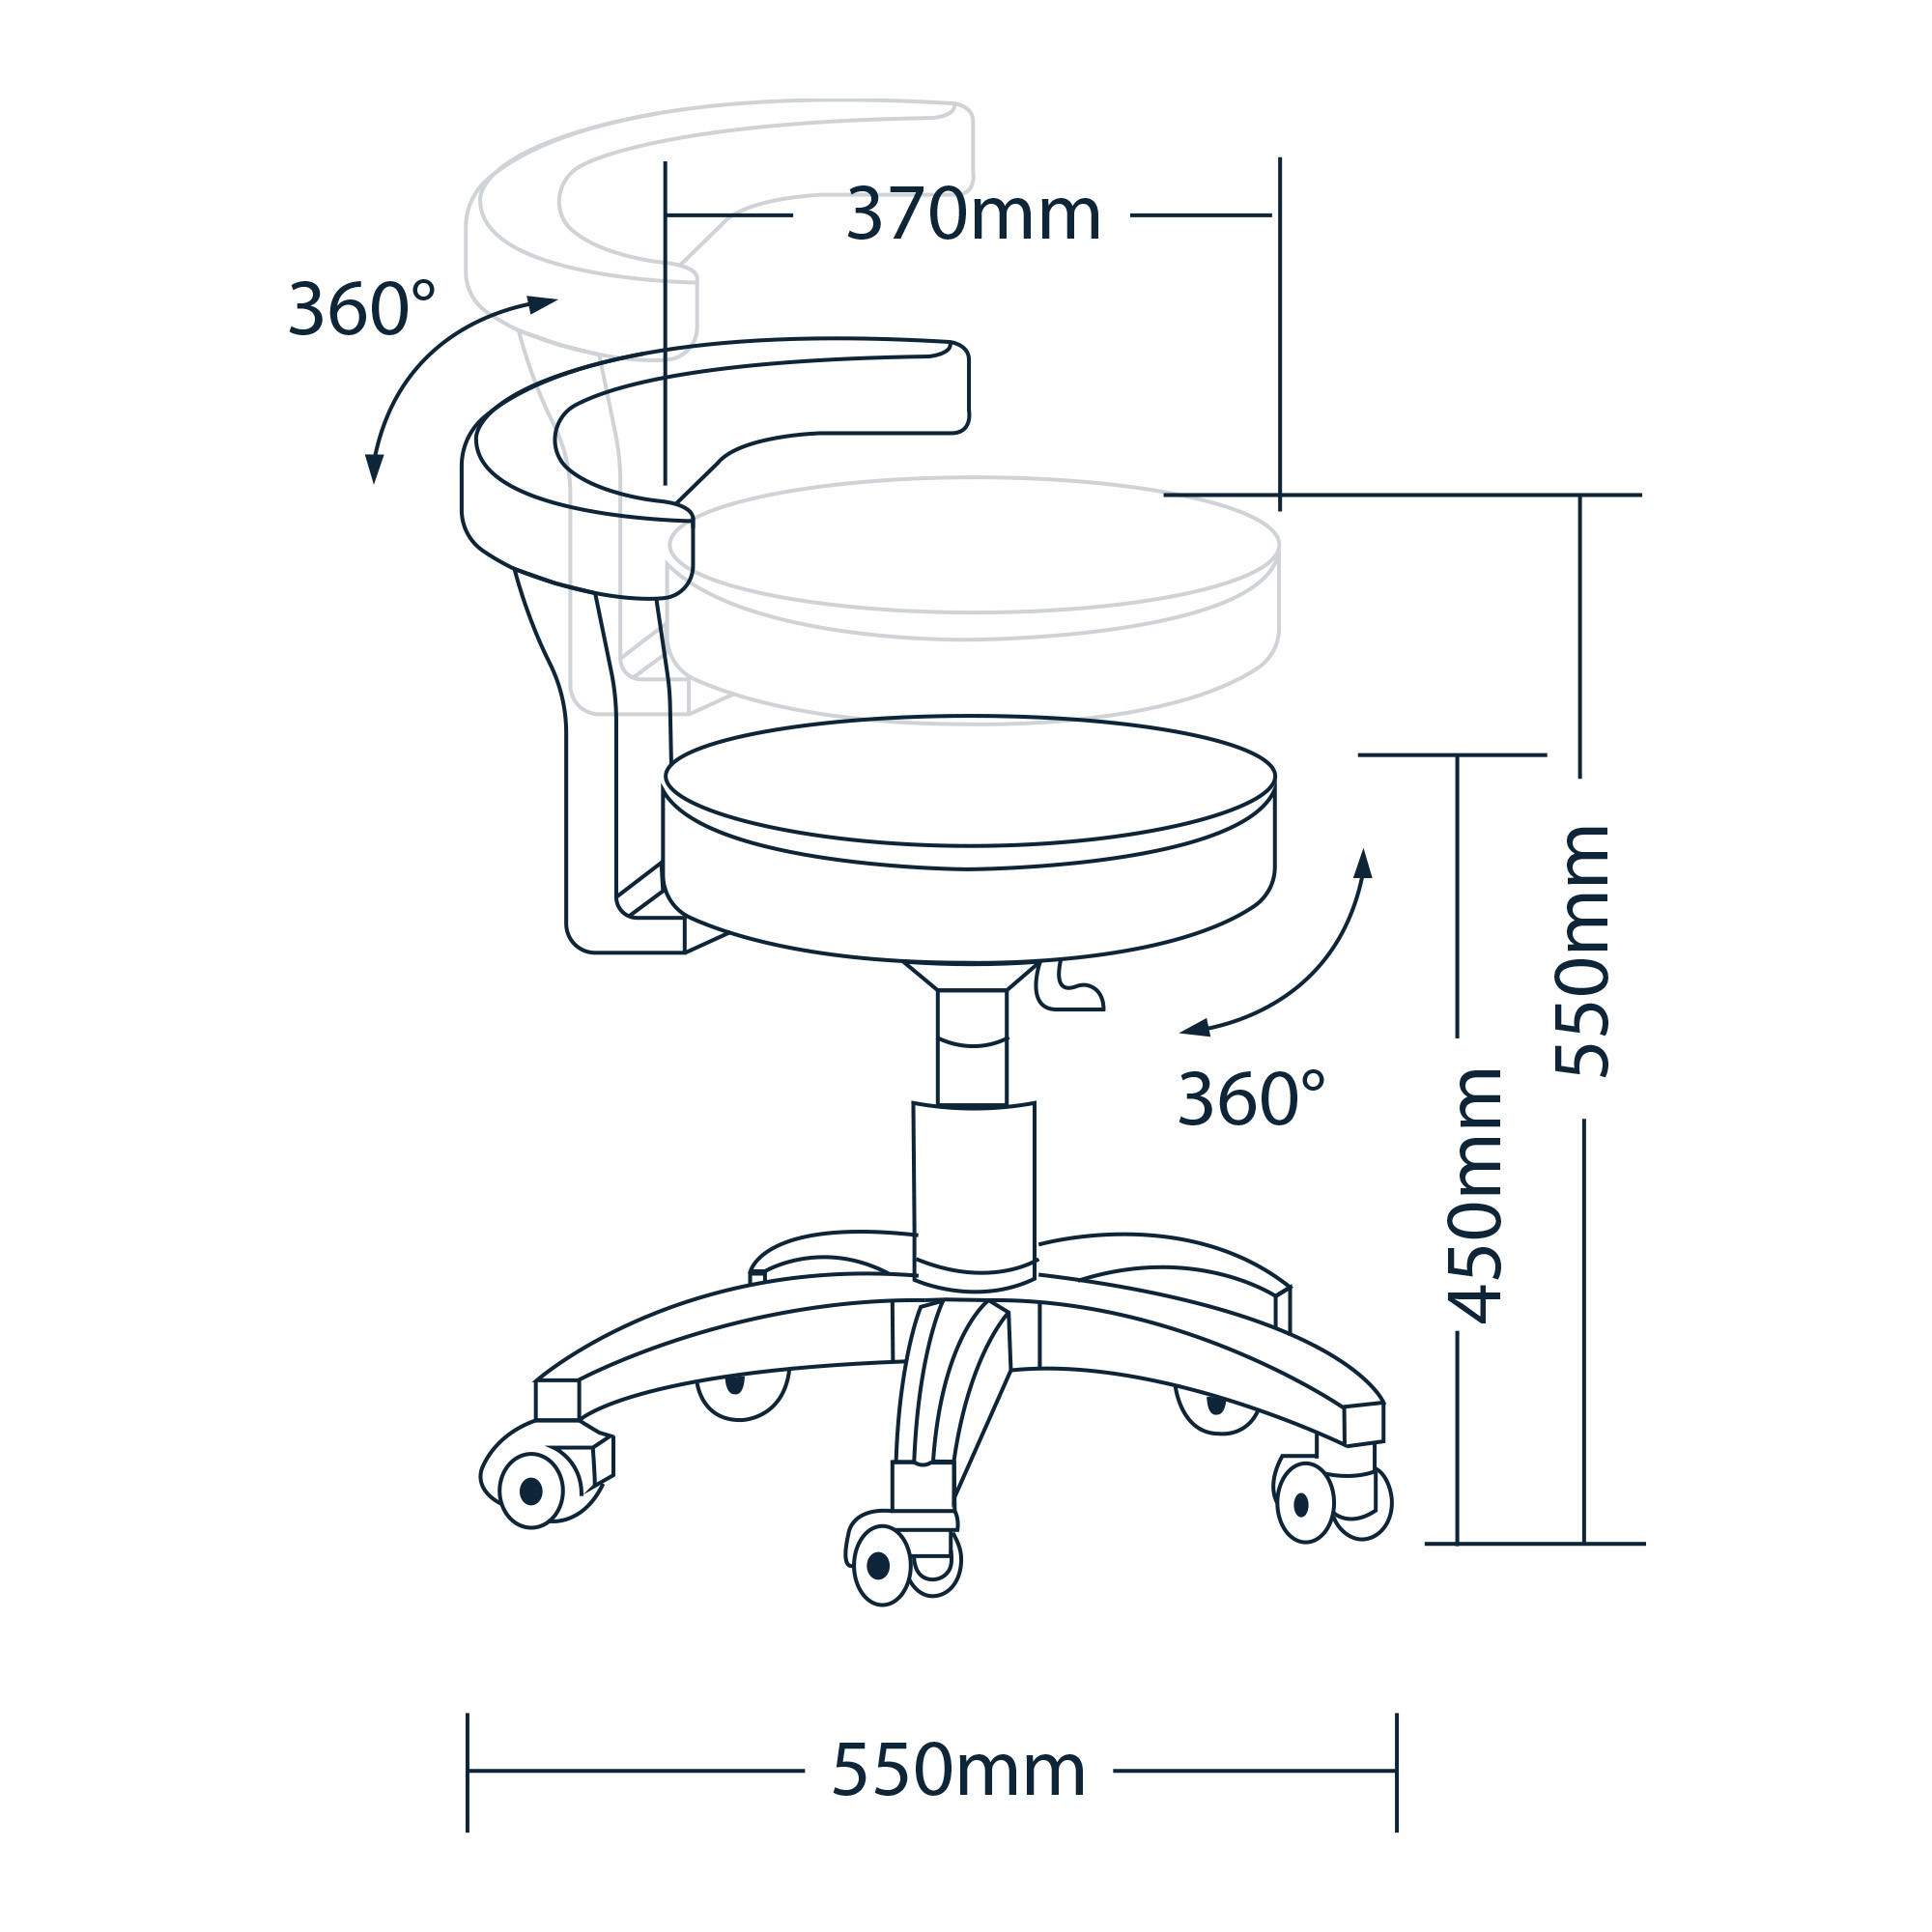 Orbit - Professioneller Stuhl mit drehbarer Rückenlehne